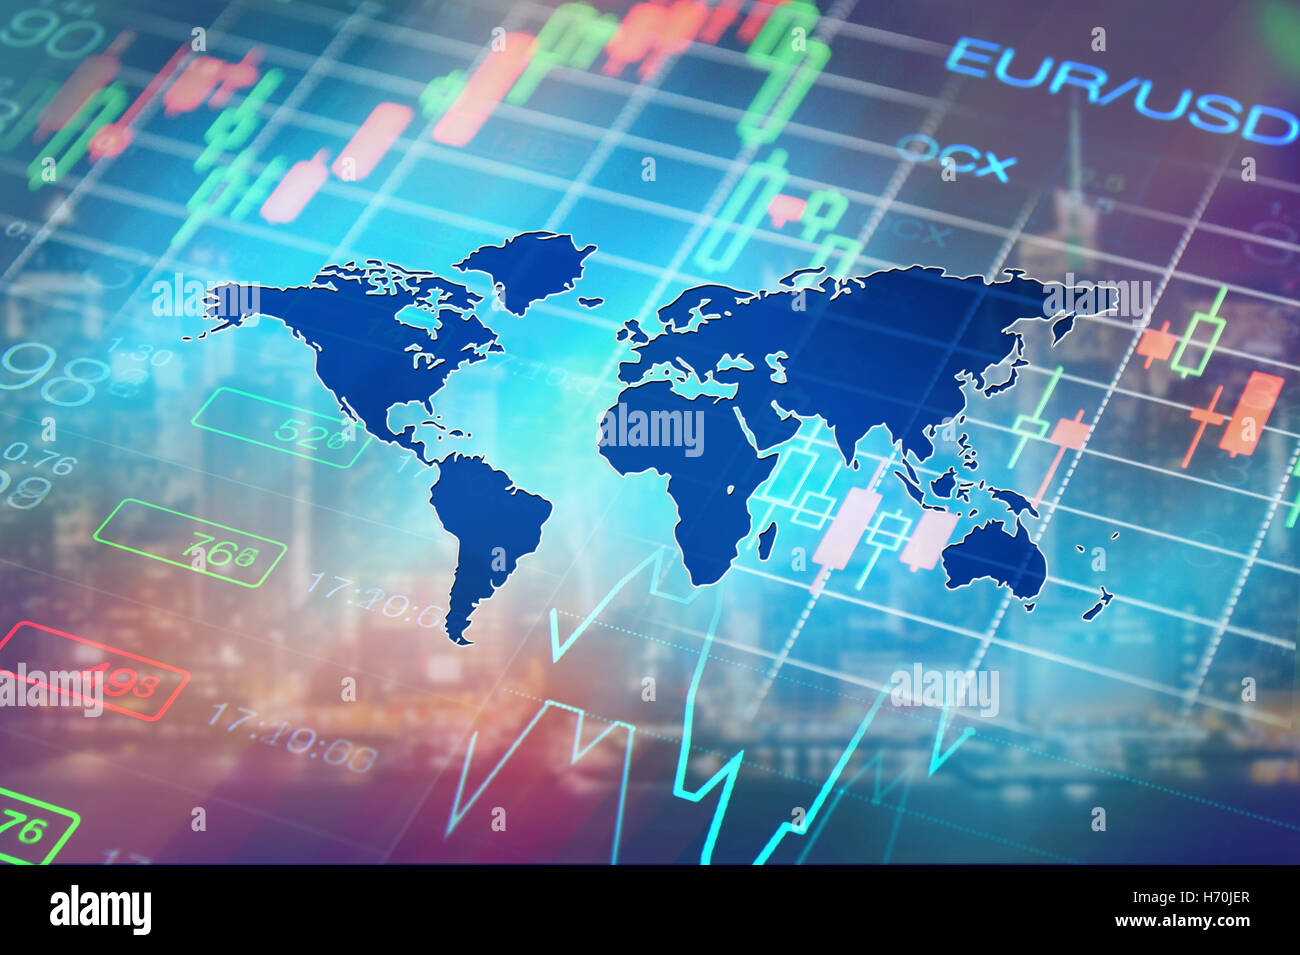 Economía mundial, finanzas, forex, mercados financieros noticias background Foto de stock